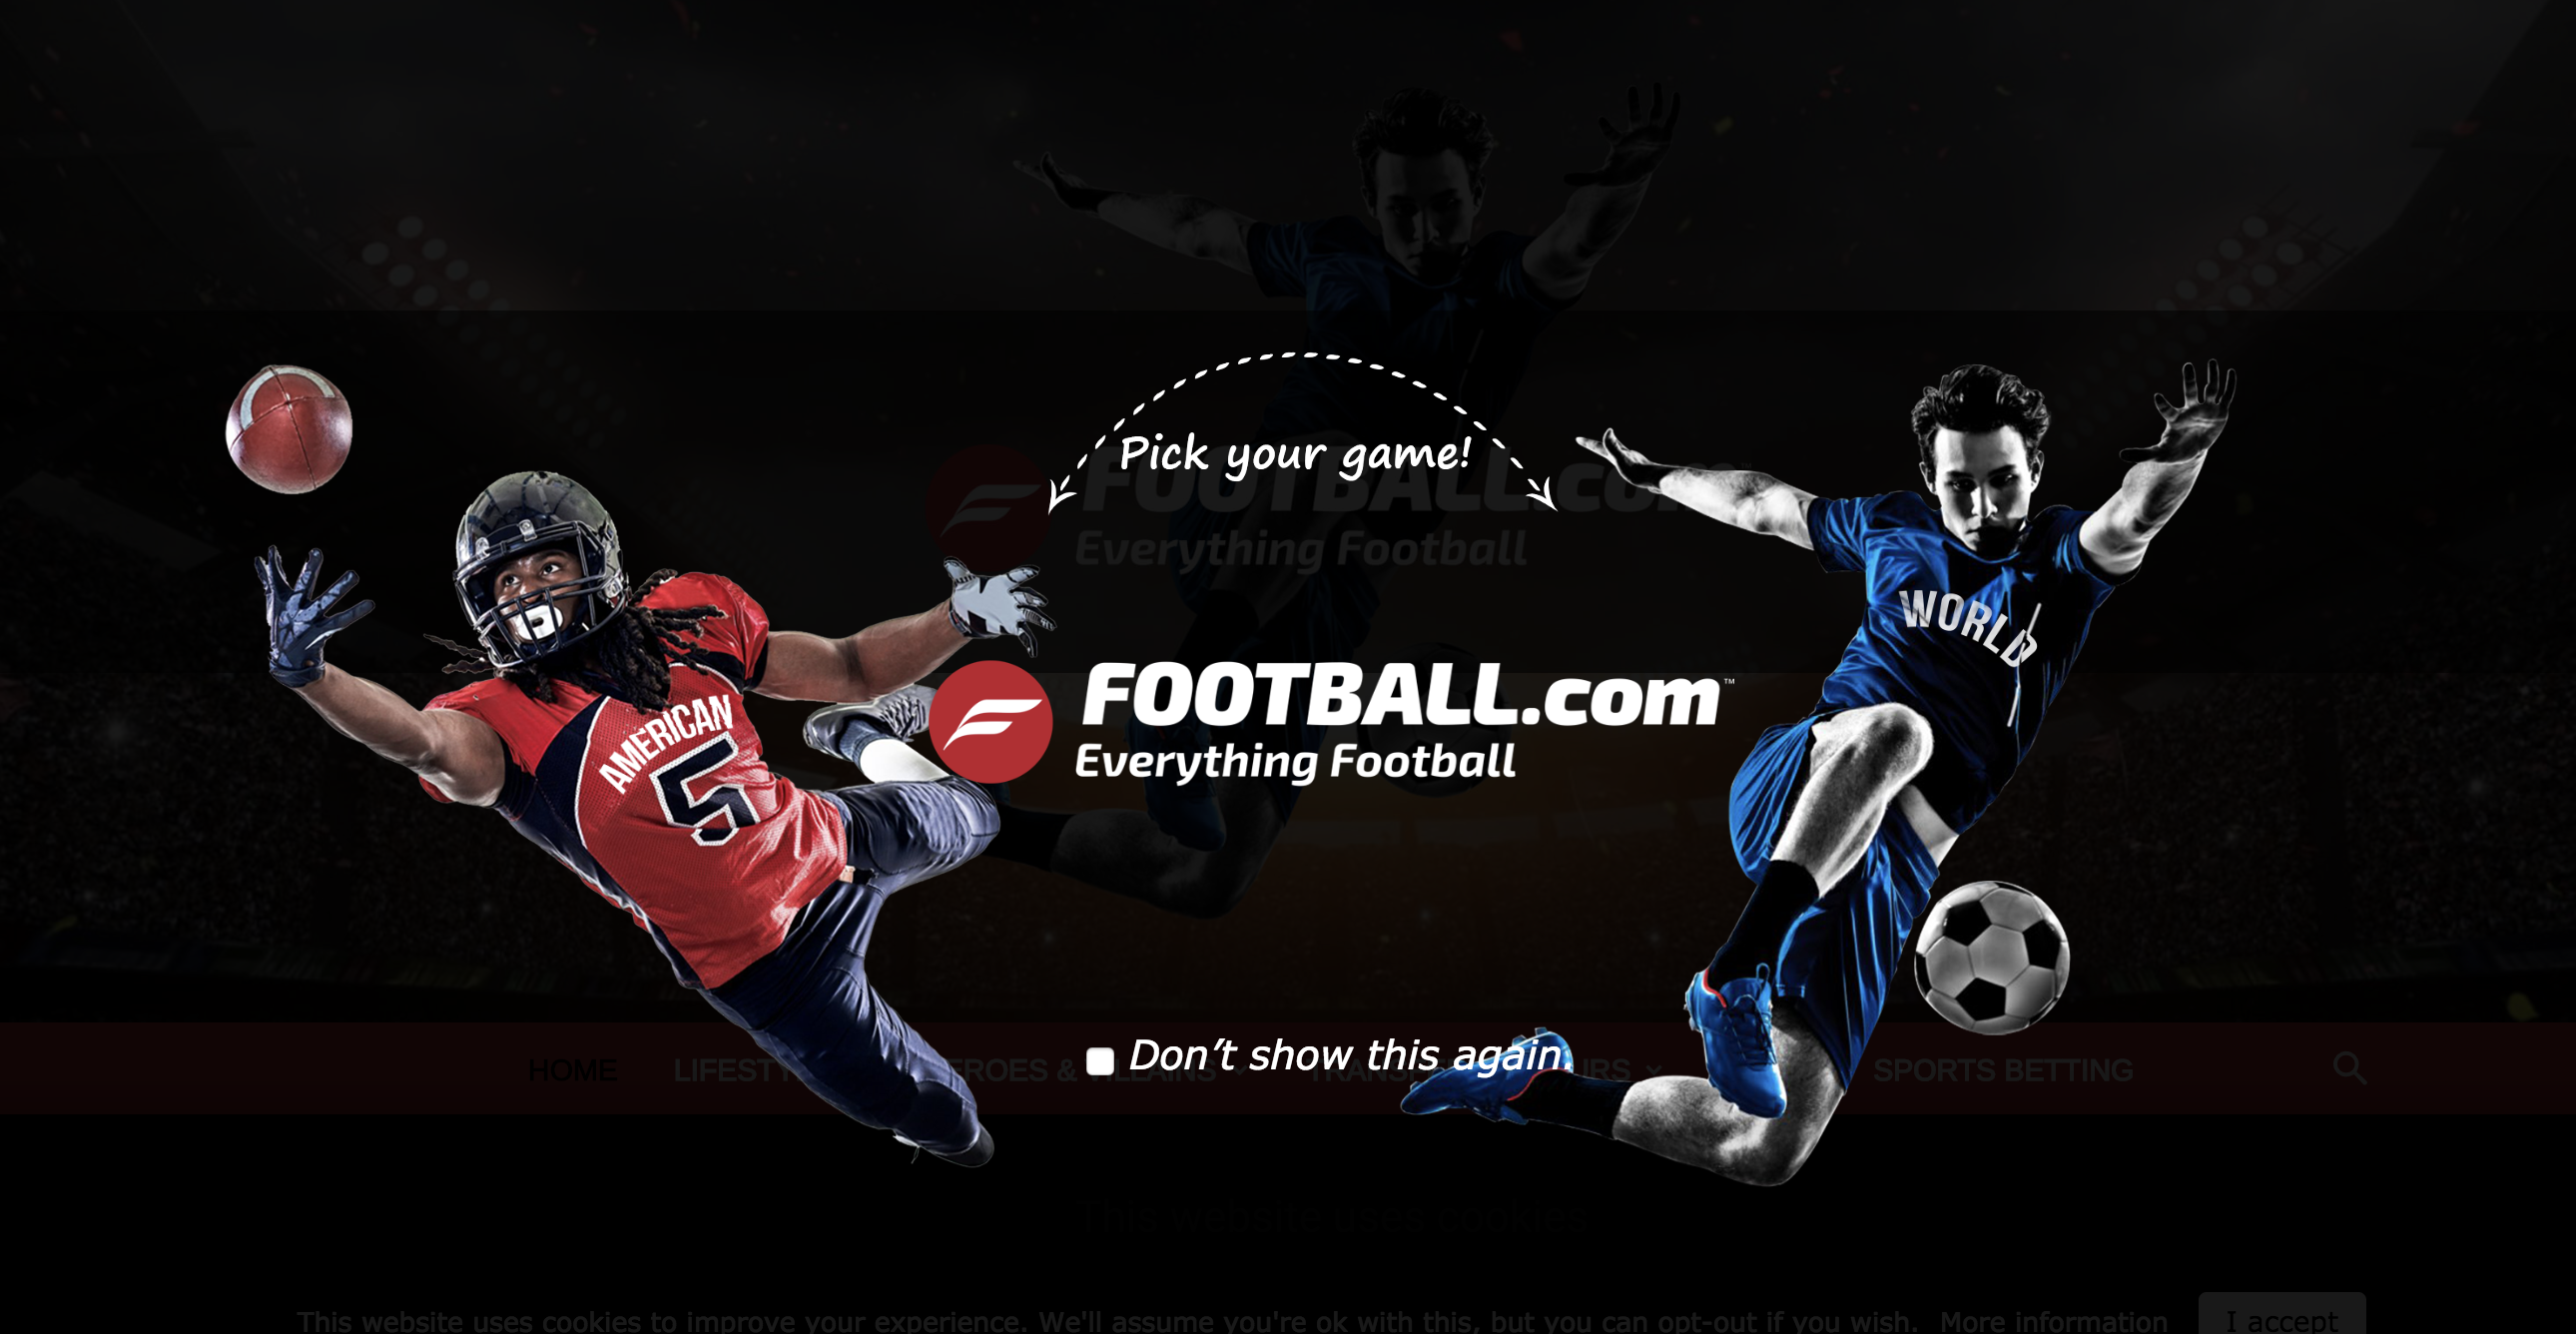 football.com